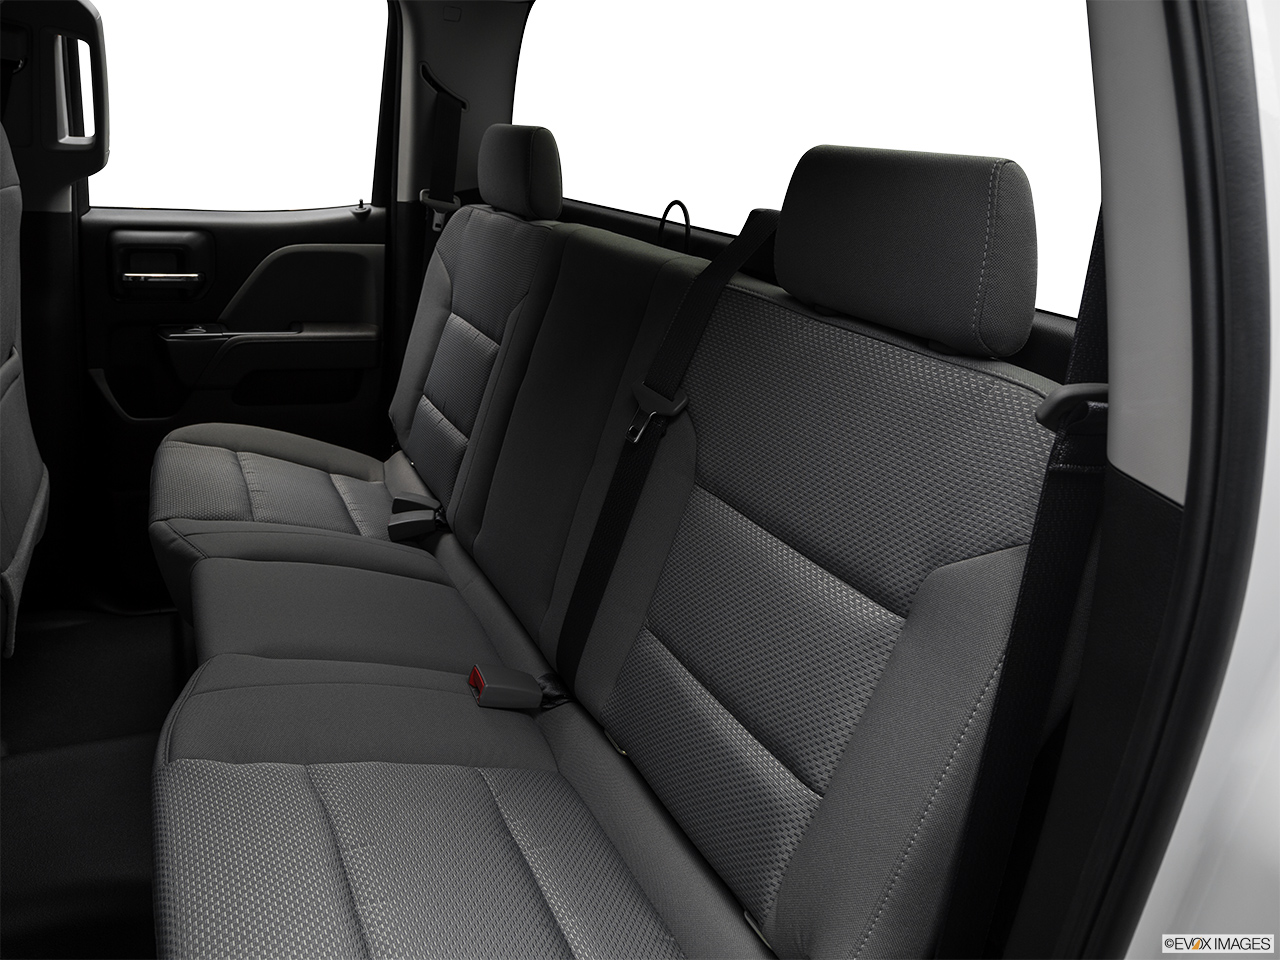 2017 GMC Sierra 3500 HD Base Rear seats from Drivers Side. 